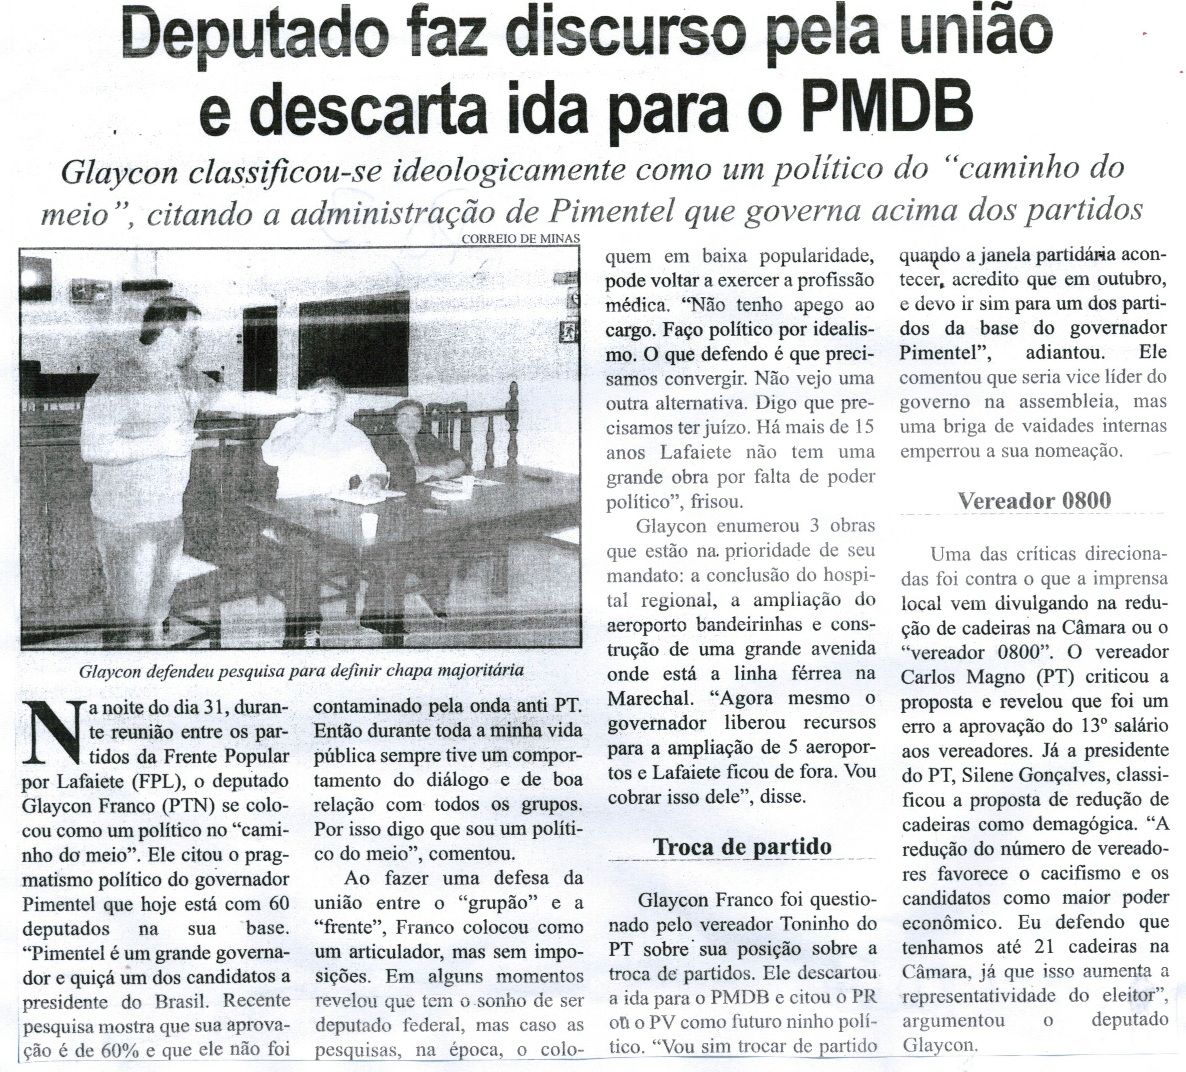 Deputado faz discurso pela união e descarta ida para o PMDB. Correio de Minas, Conselheiro Lafaiete, 05 set. 2015, 417ª ed., p. 3.